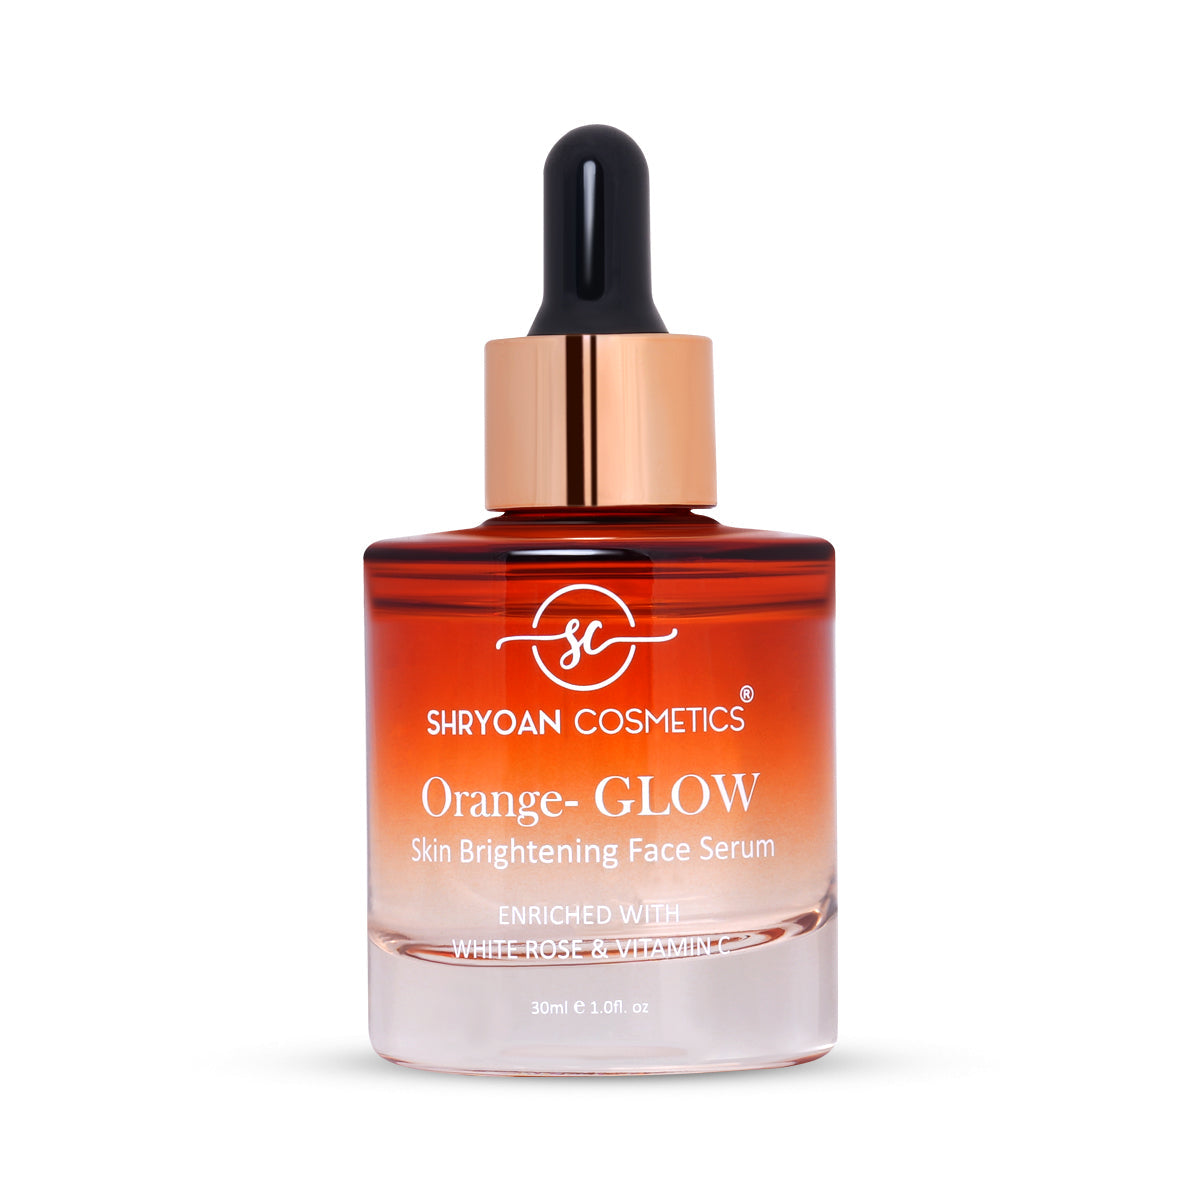 Shryoan Orange-Glow Skin Brightening Face Serum